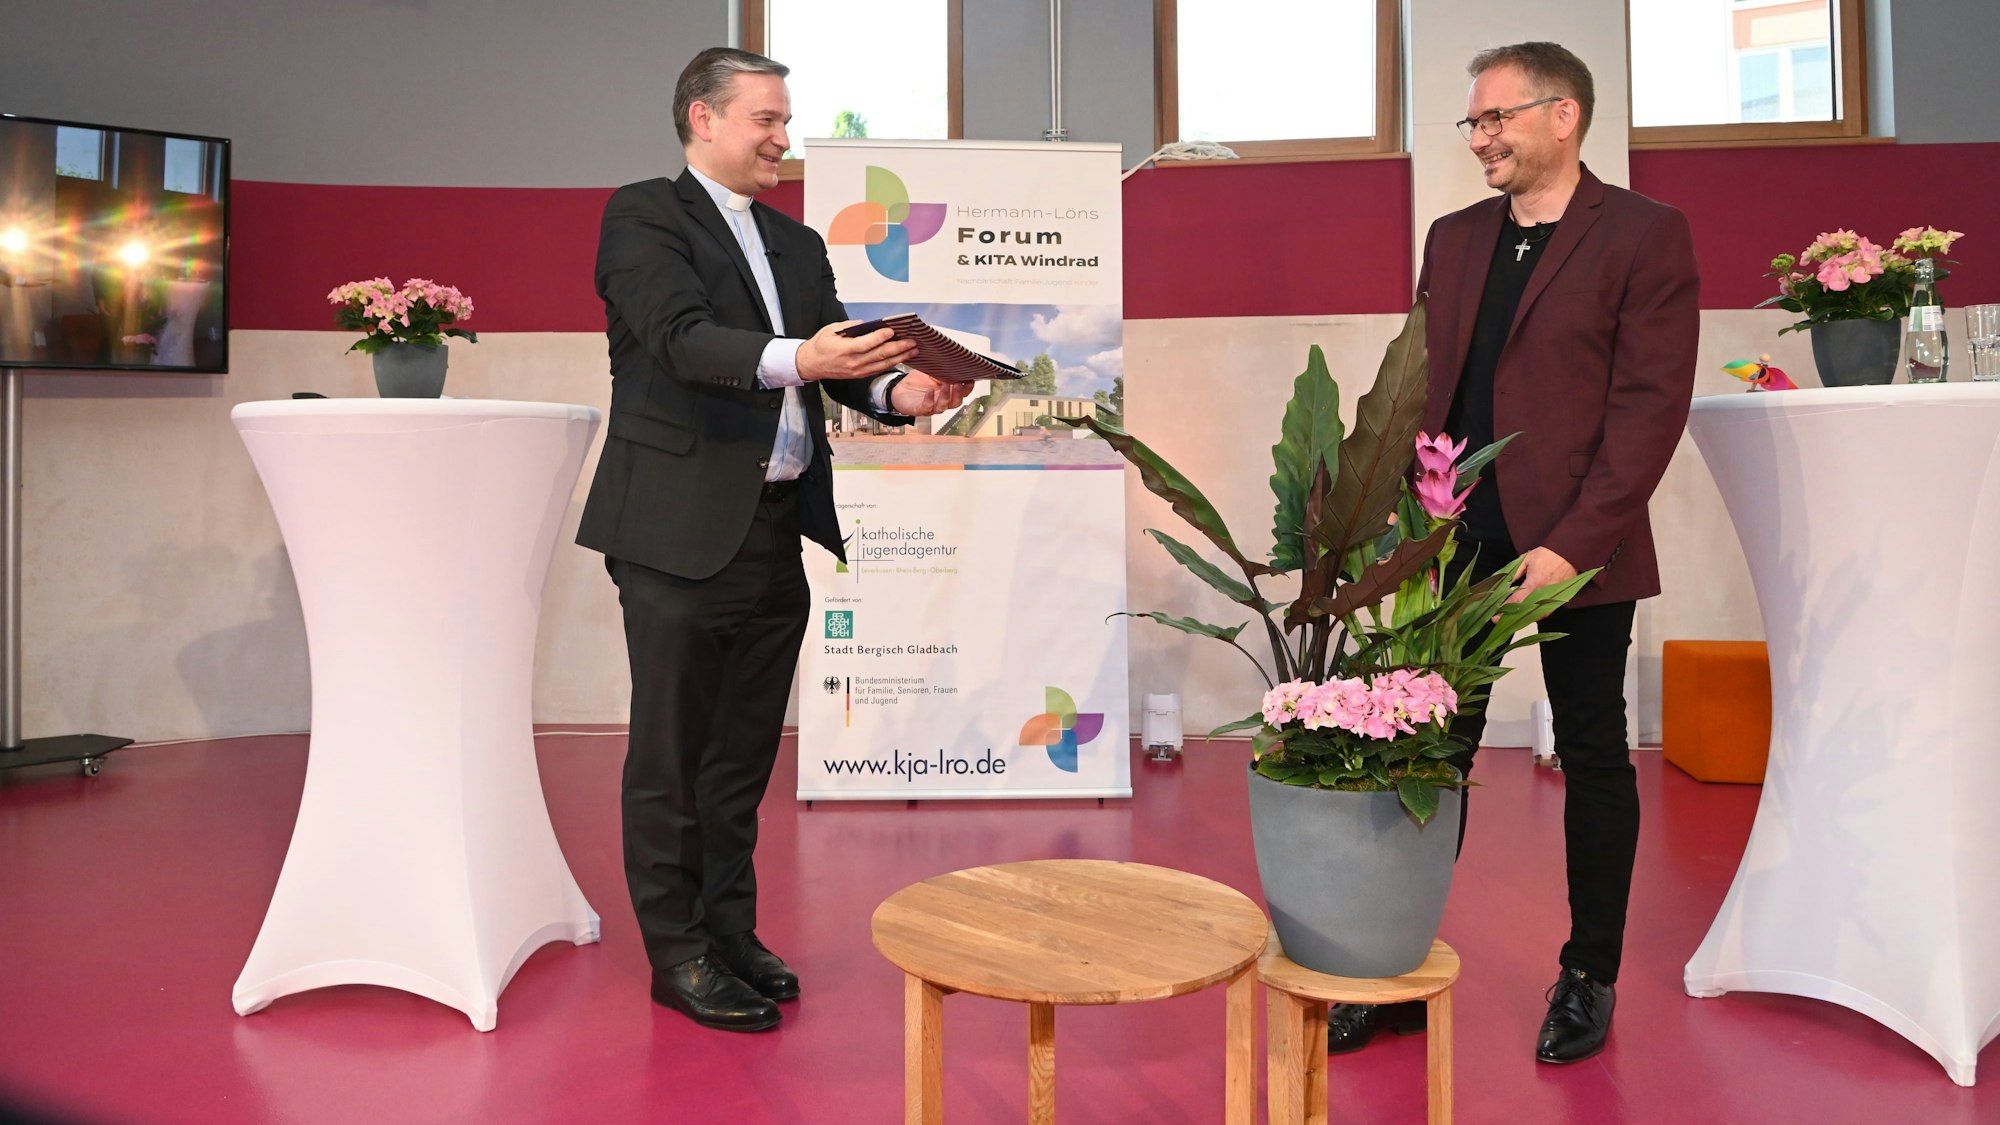 Generalvikar Msgr Dr. Markus Hofmann (l.) übergibt ein Einweihungsgeschenk an Thomas Droege (r.)

